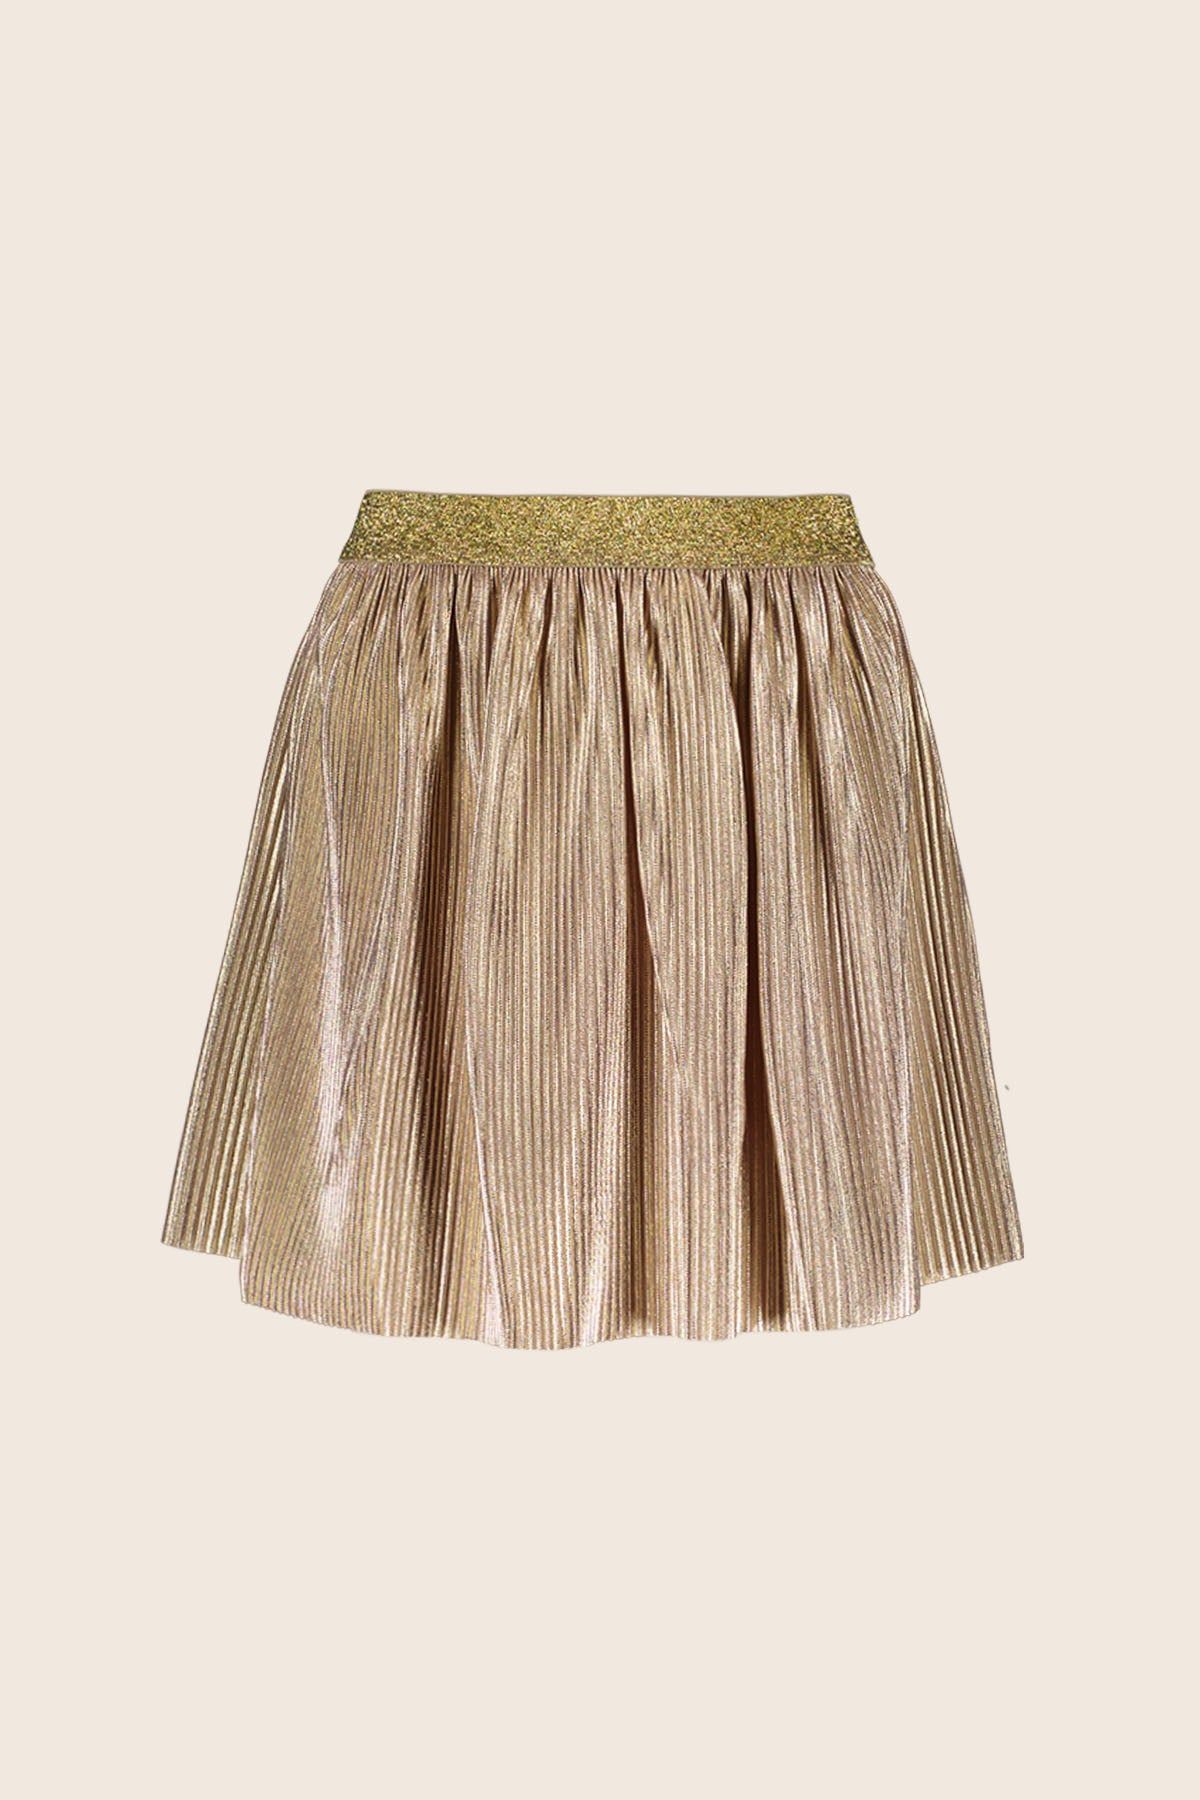 Rok Skirt VALERIA gold